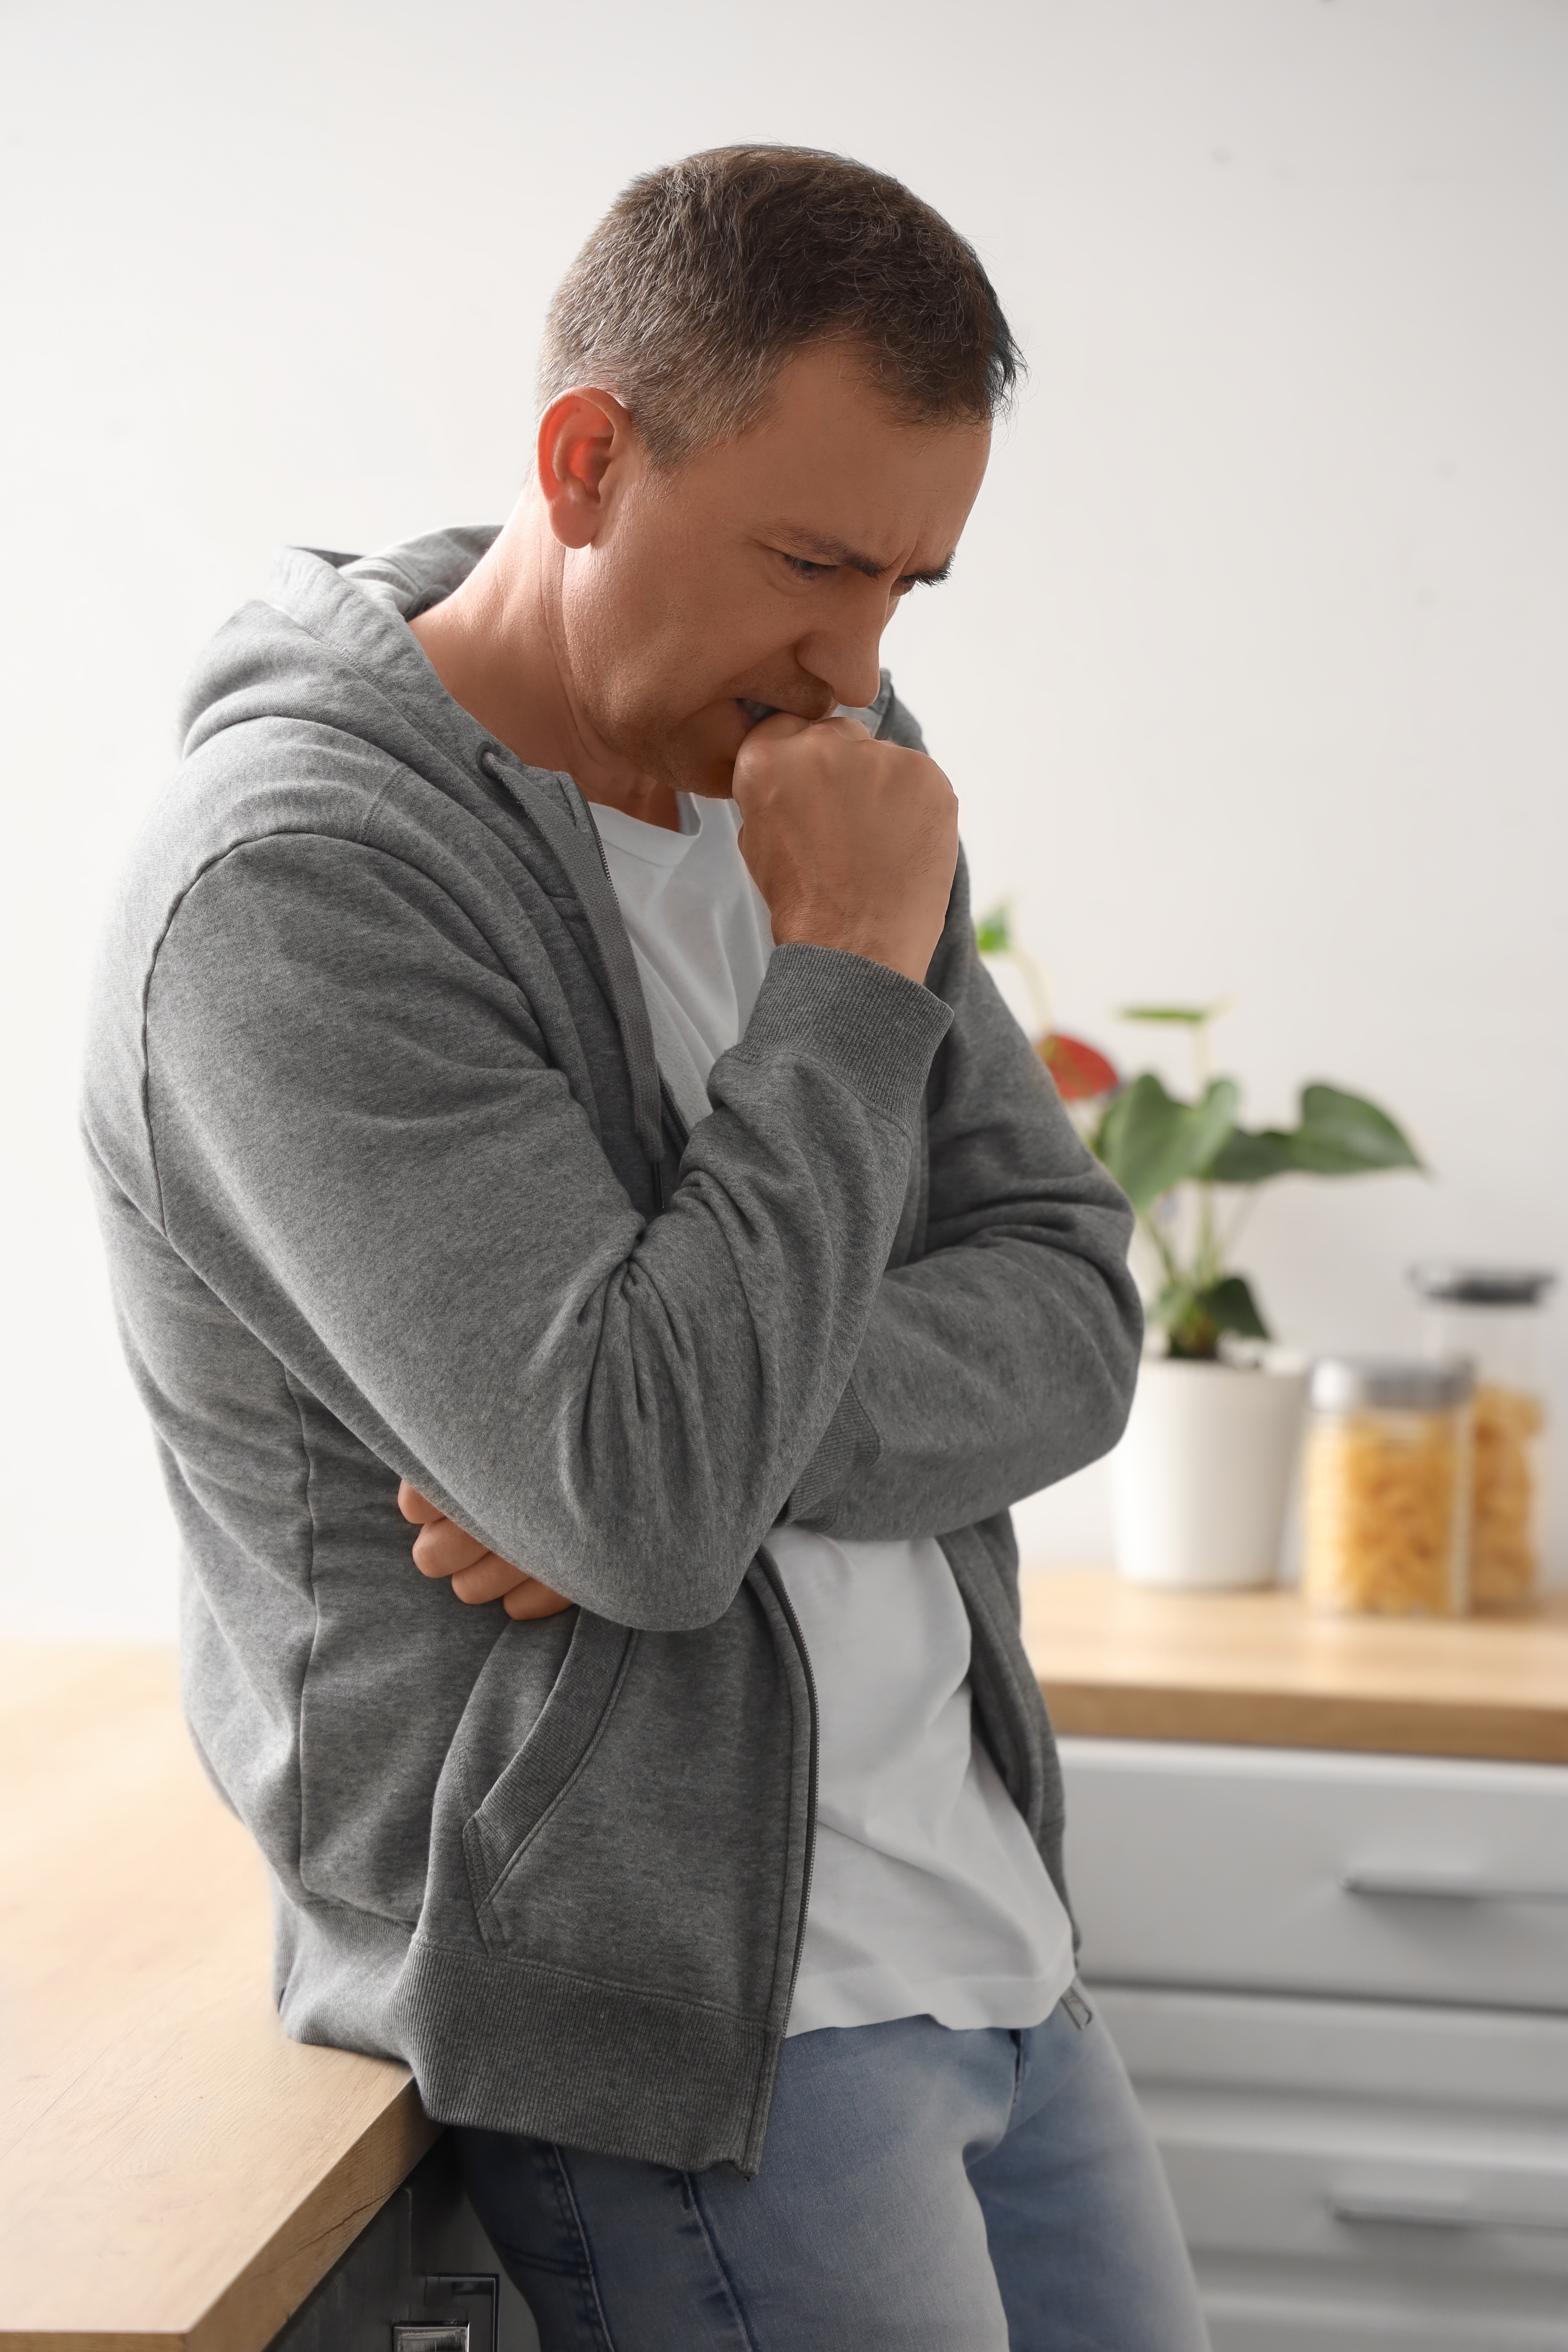 Hombre maduro sufriendo un ataque de pánico en la cocina. | Fuente: Shutterstock